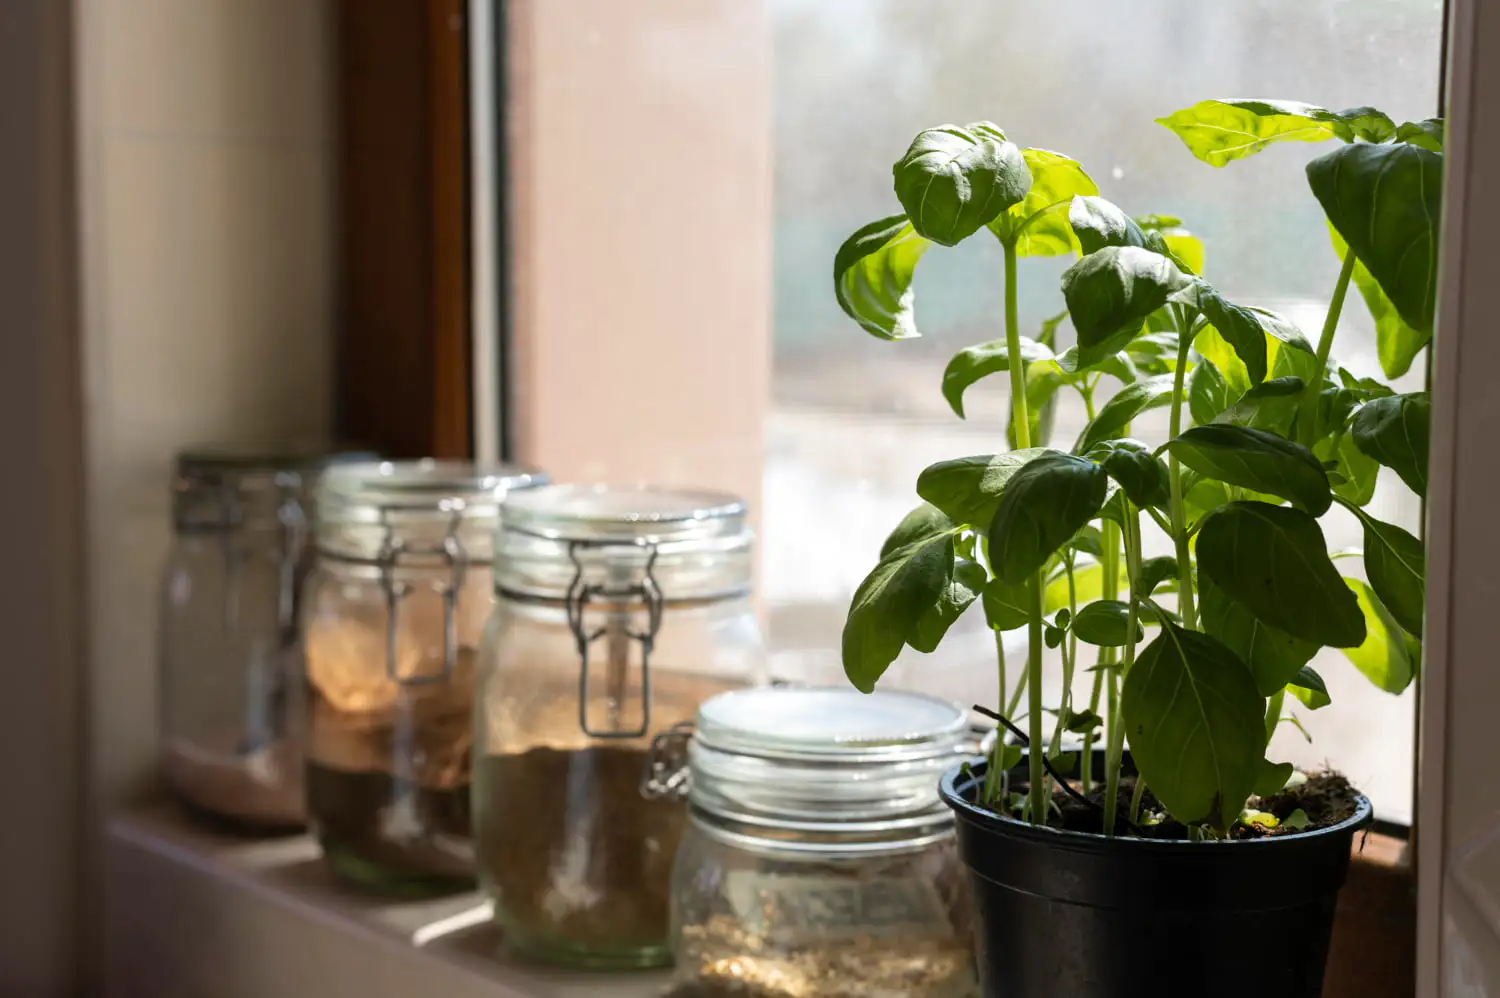 Planta de manjericão iluminada pelo sol prosperando dentro de casa, demonstrando estratégias eficazes de iluminação para plantas internas